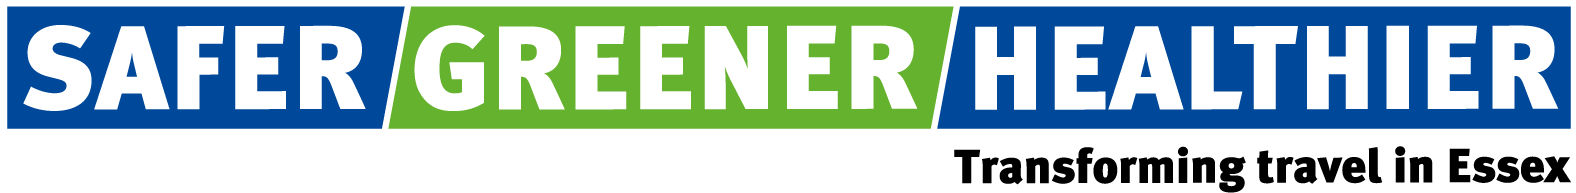 Safer Greener Healthier logo